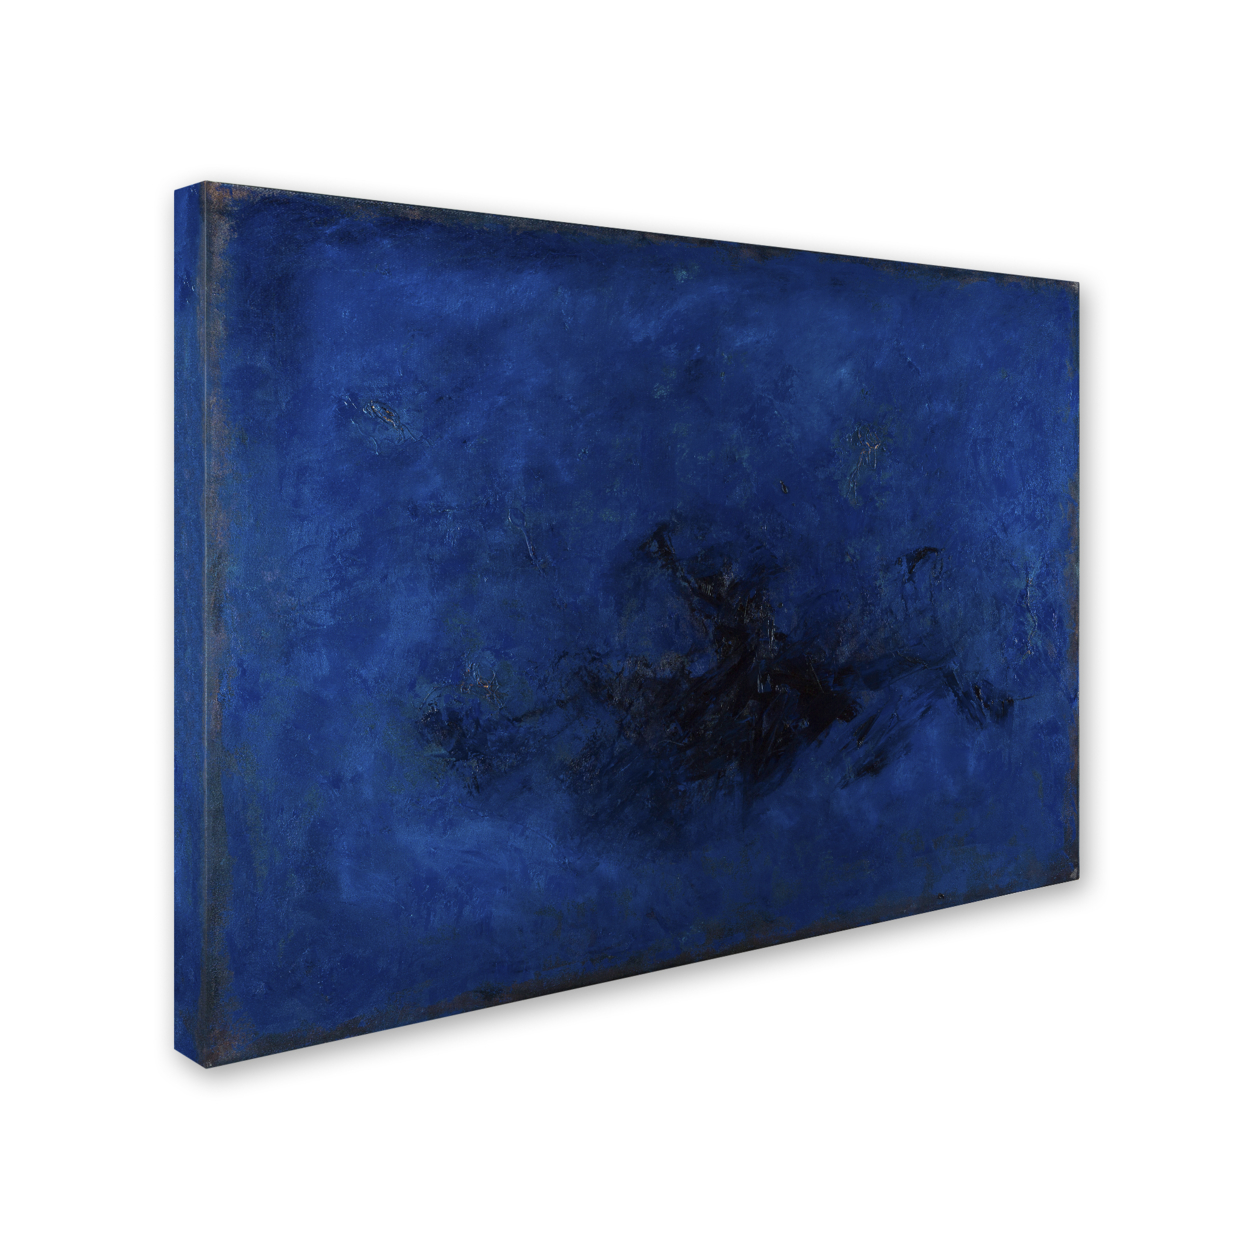 Joarez 'Deep Blue' 14 X 19 Canvas Art